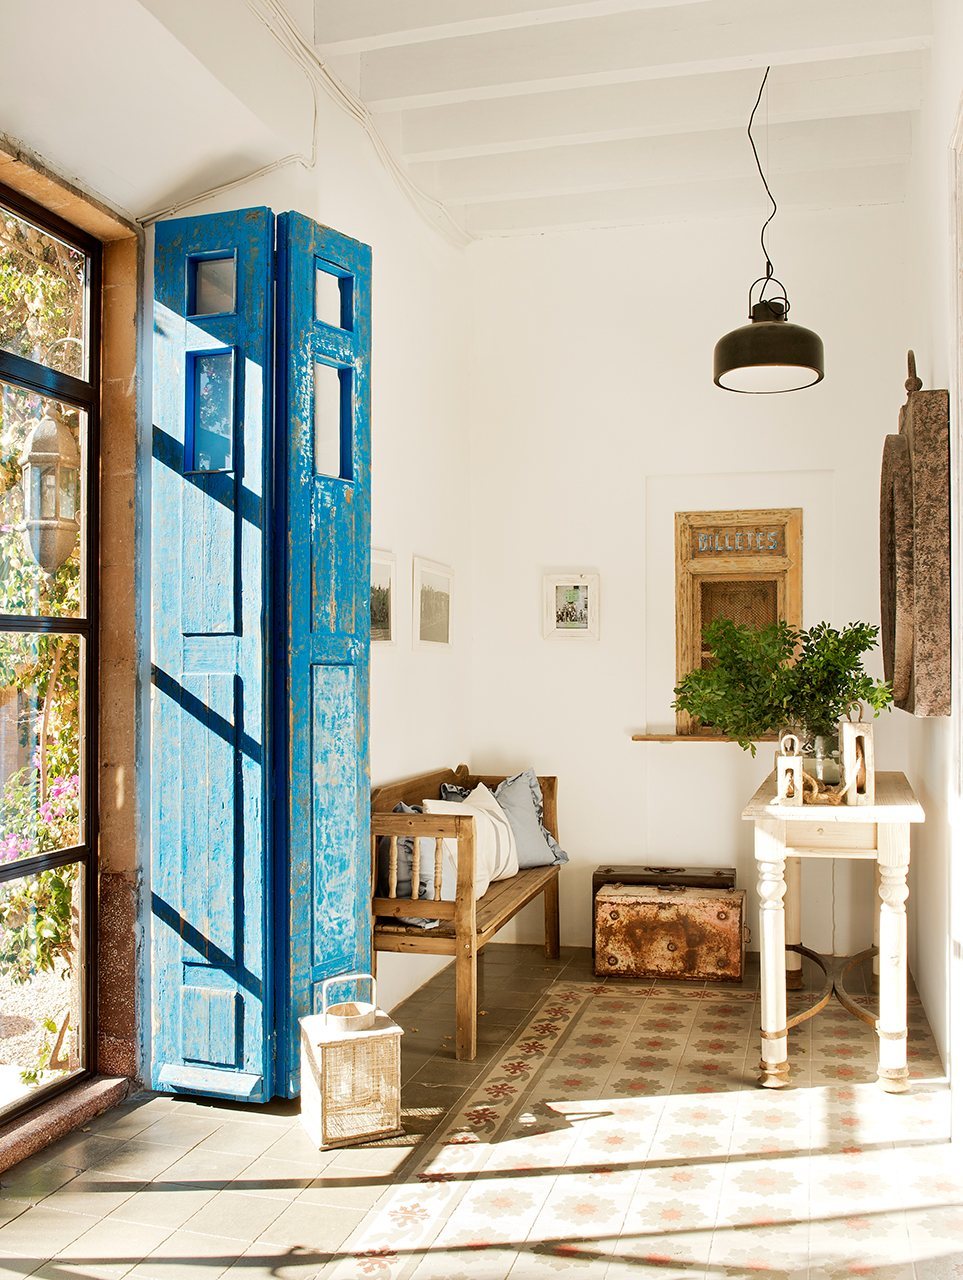 Cementlap burkolat előszobában kékre festett ajtó